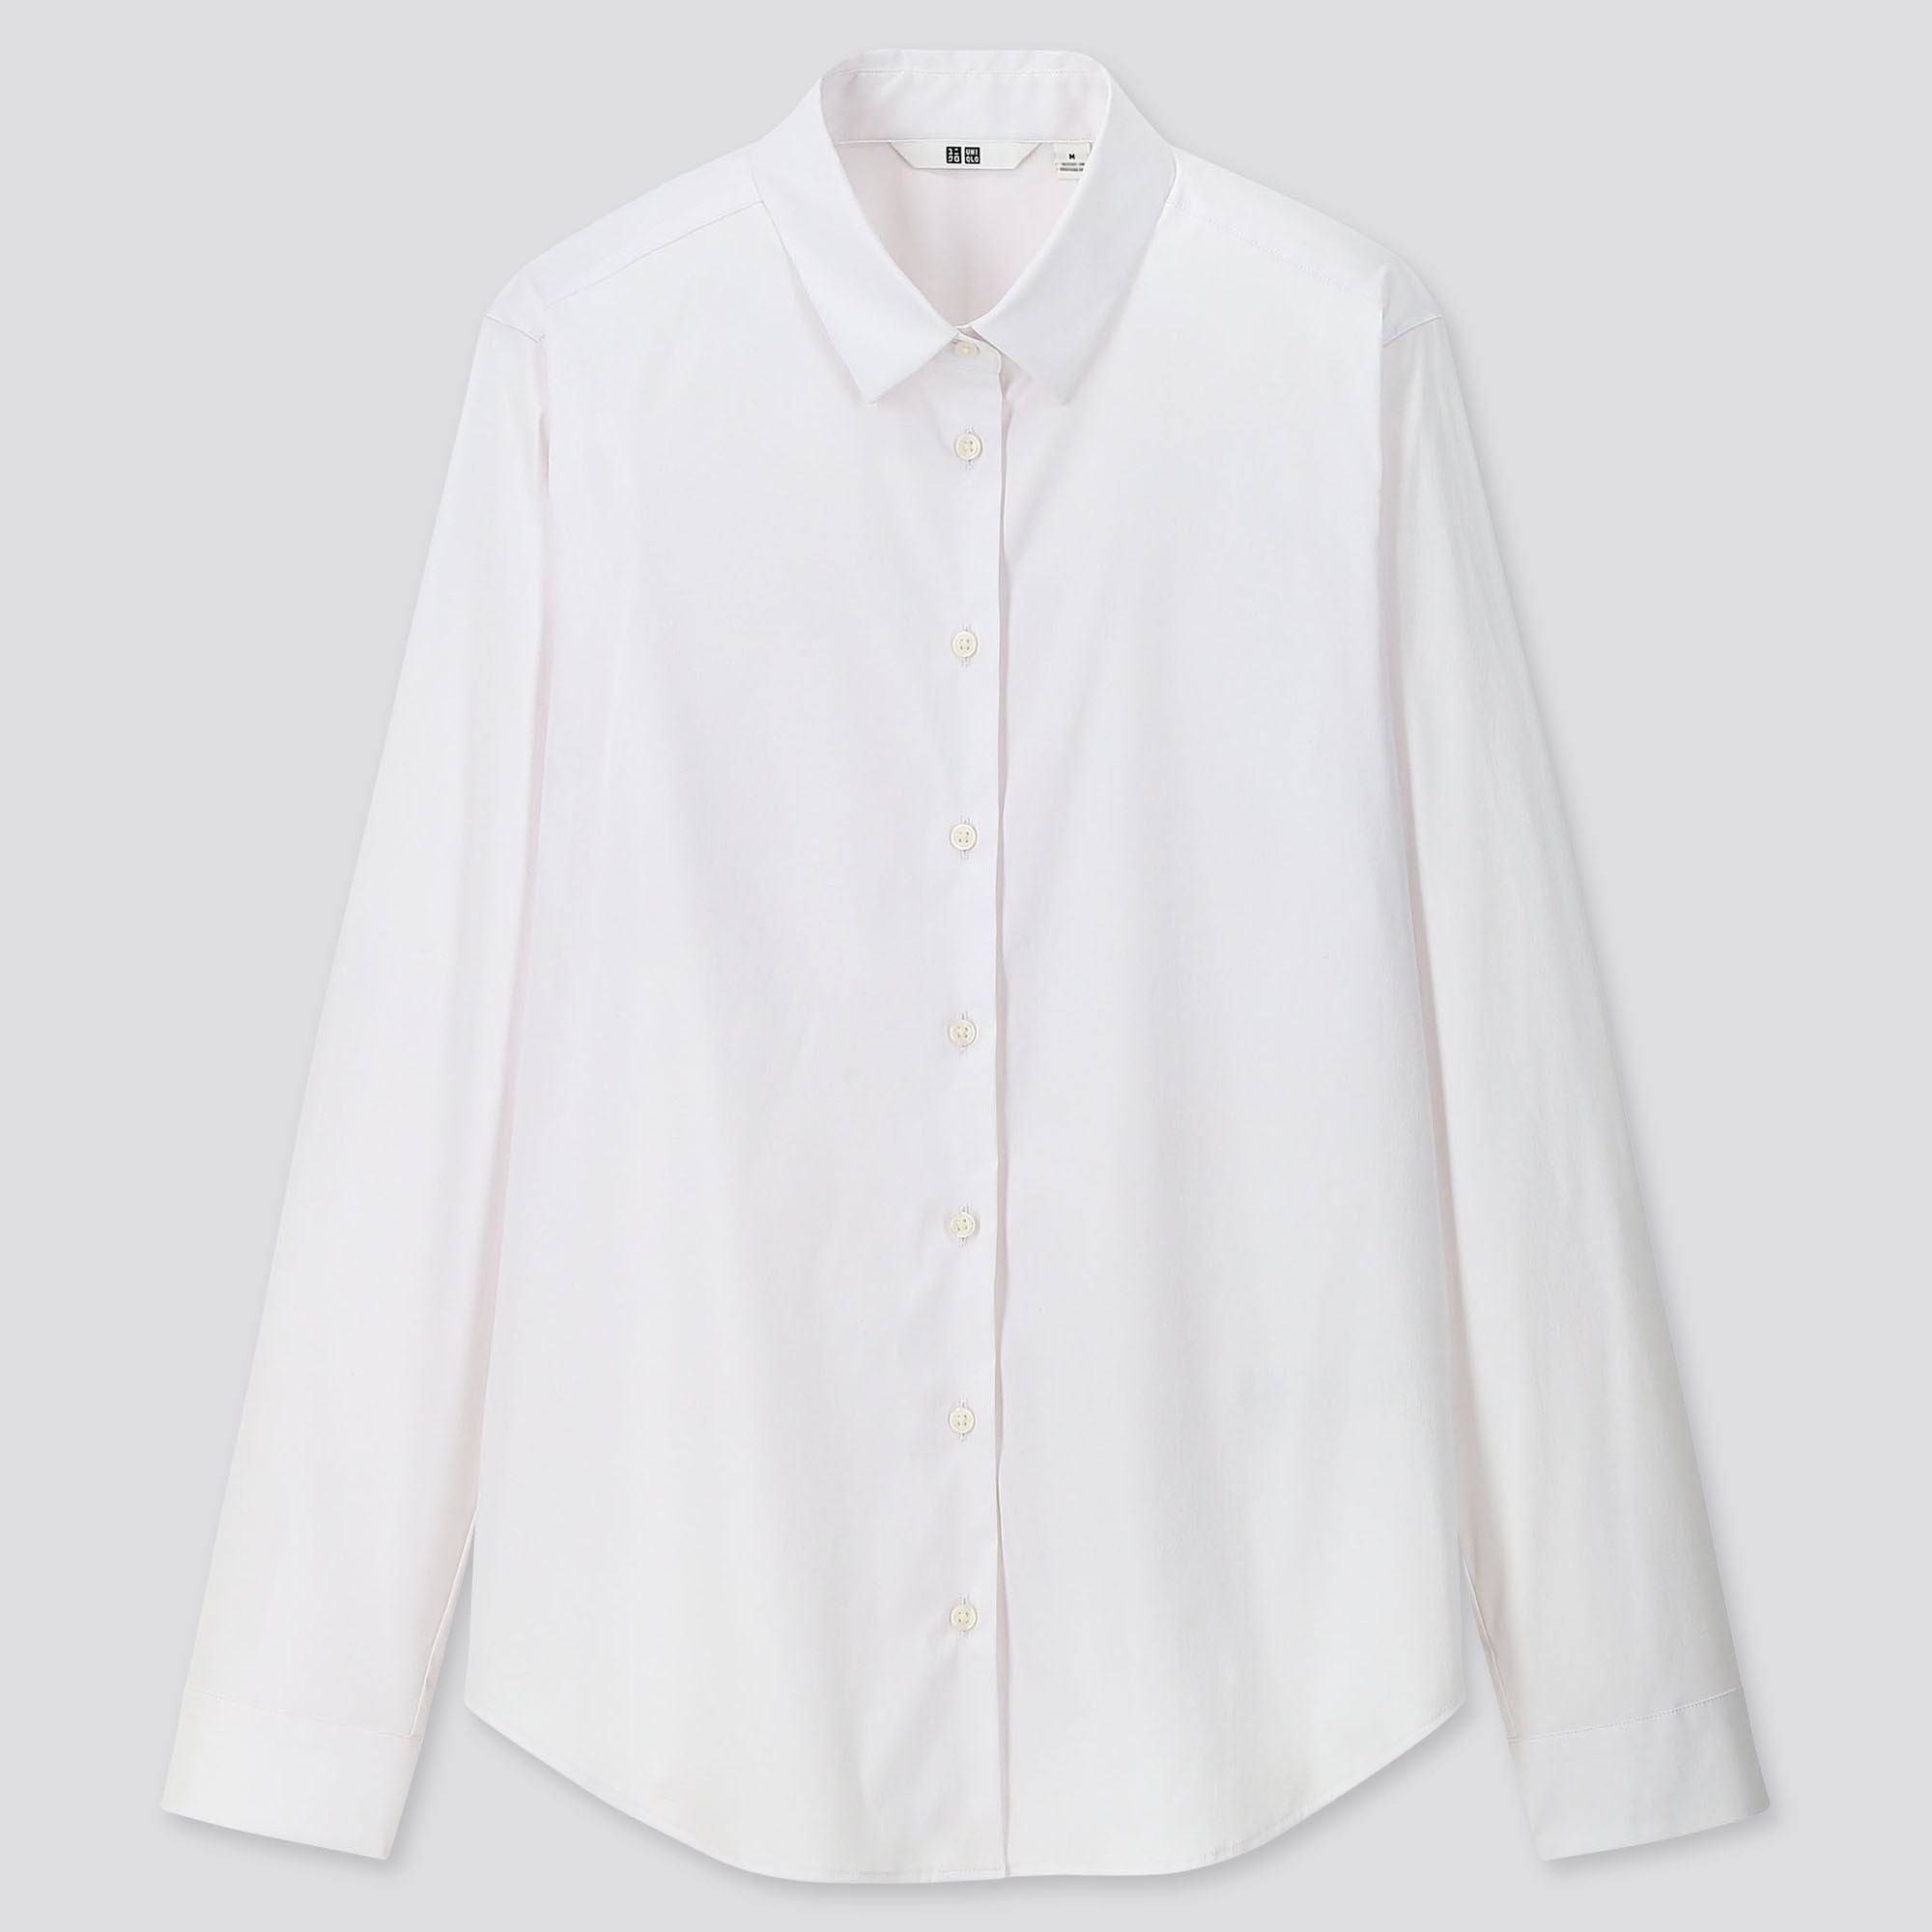 uniqlo white dress shirt